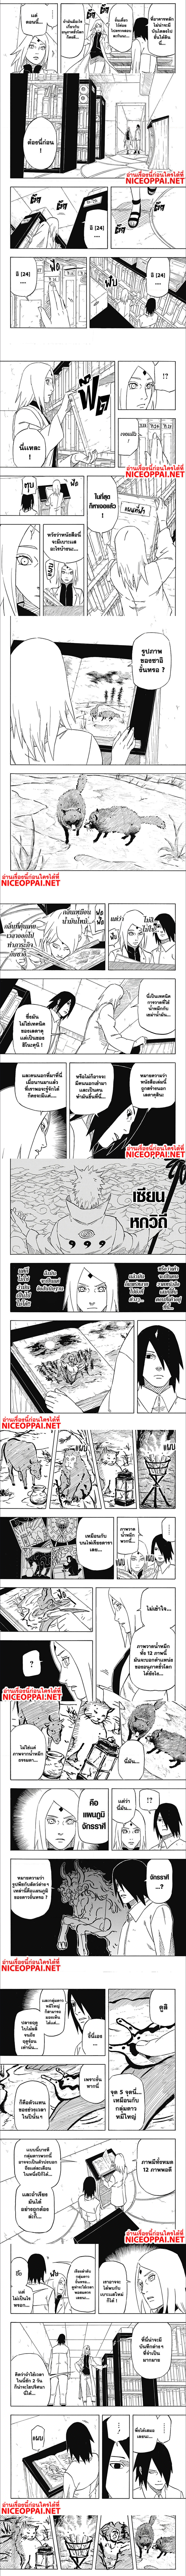 Naruto Sasuke’s Story The Uchiha and the Heavenly Stardust 4 (5)